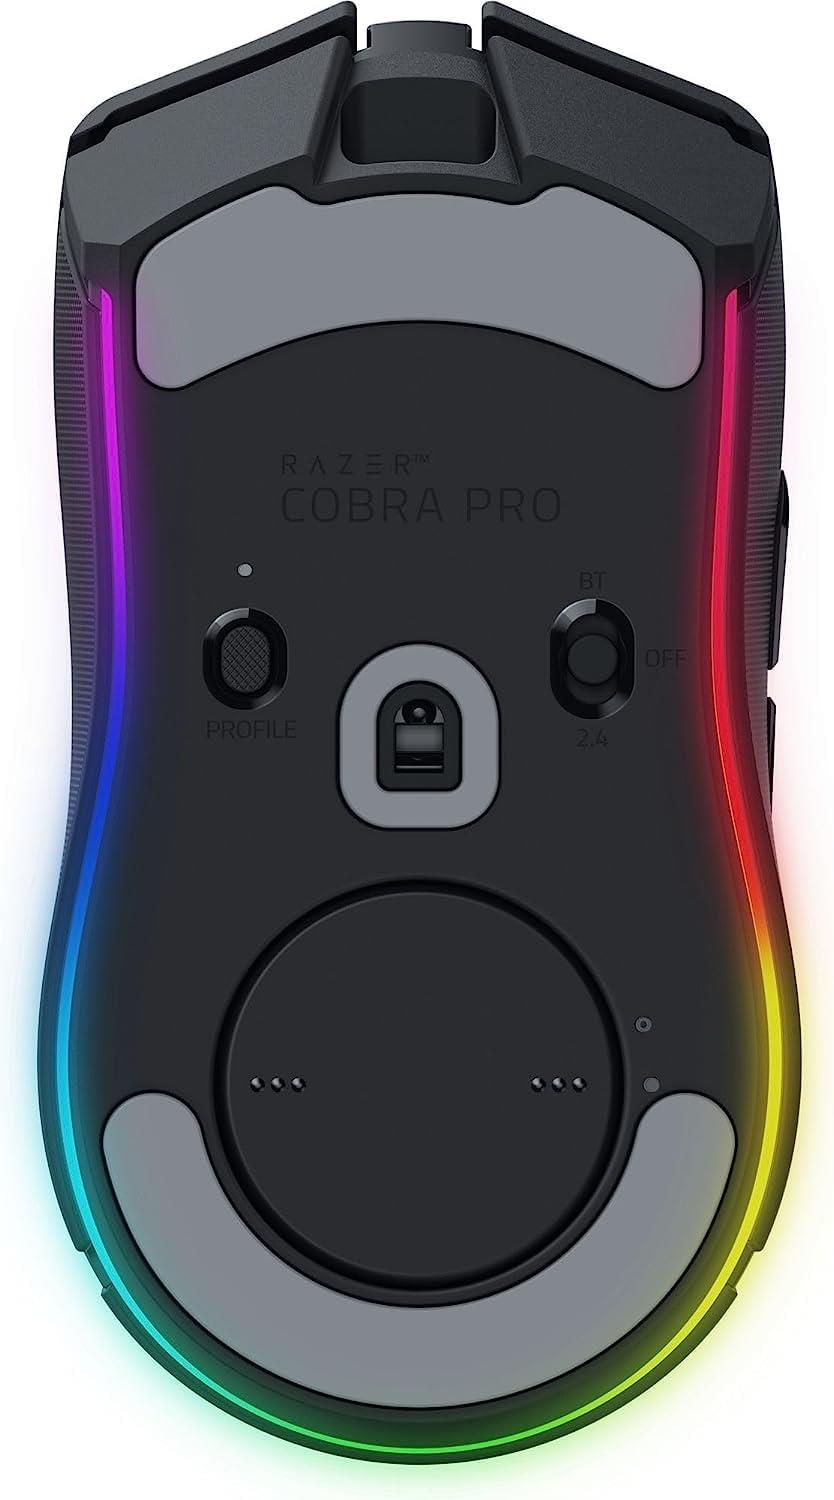 Razer Cobra Pro Kablosuz Gaming Mouse (RZ01-04660100-R3G1) - Nethouse